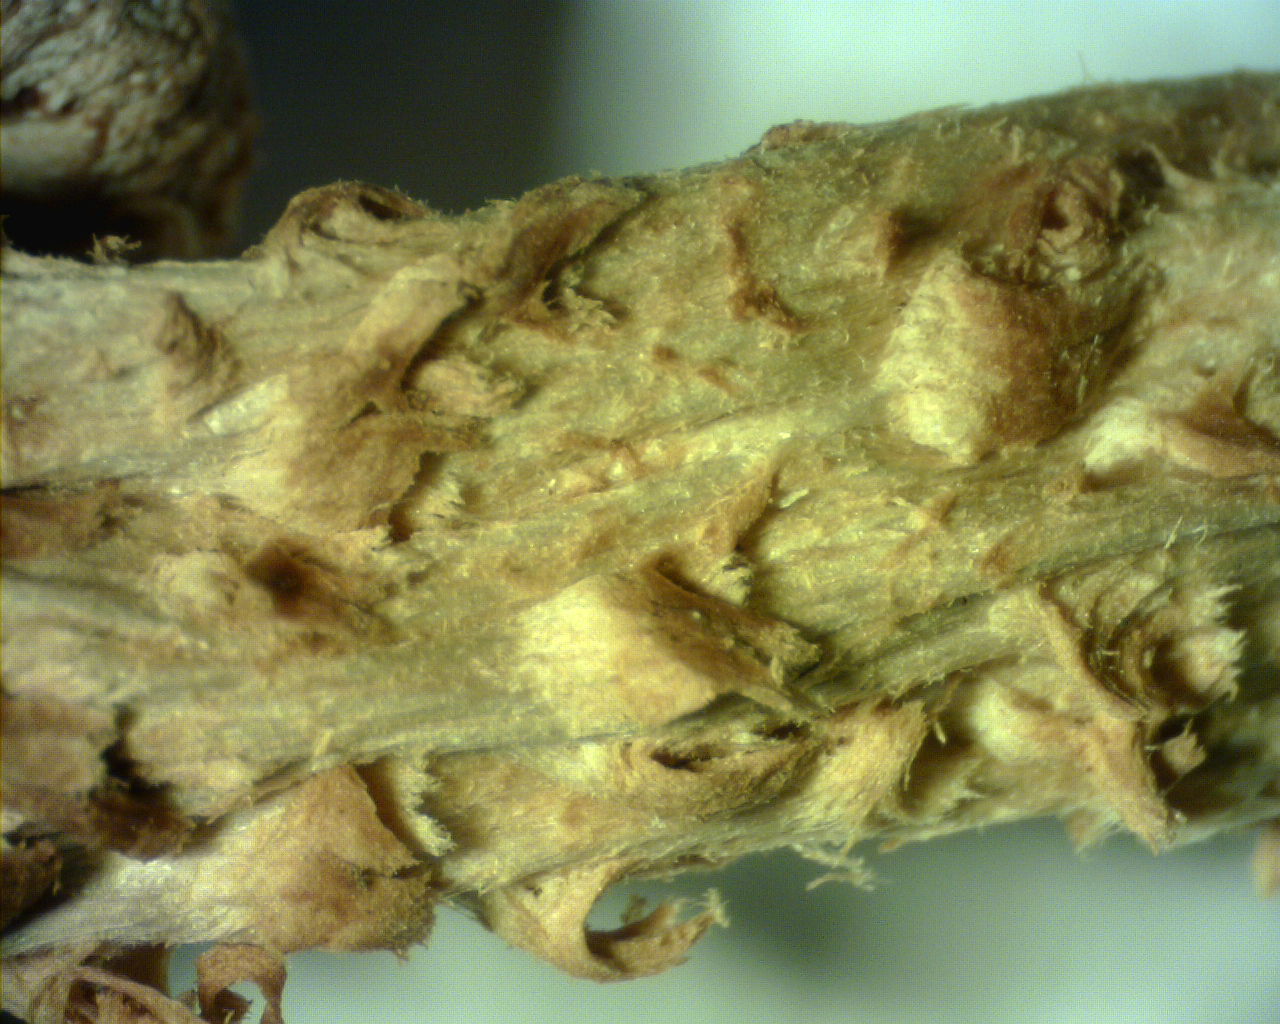 Pholiota squarrosa (Vahl) P. Kumm Figure 2